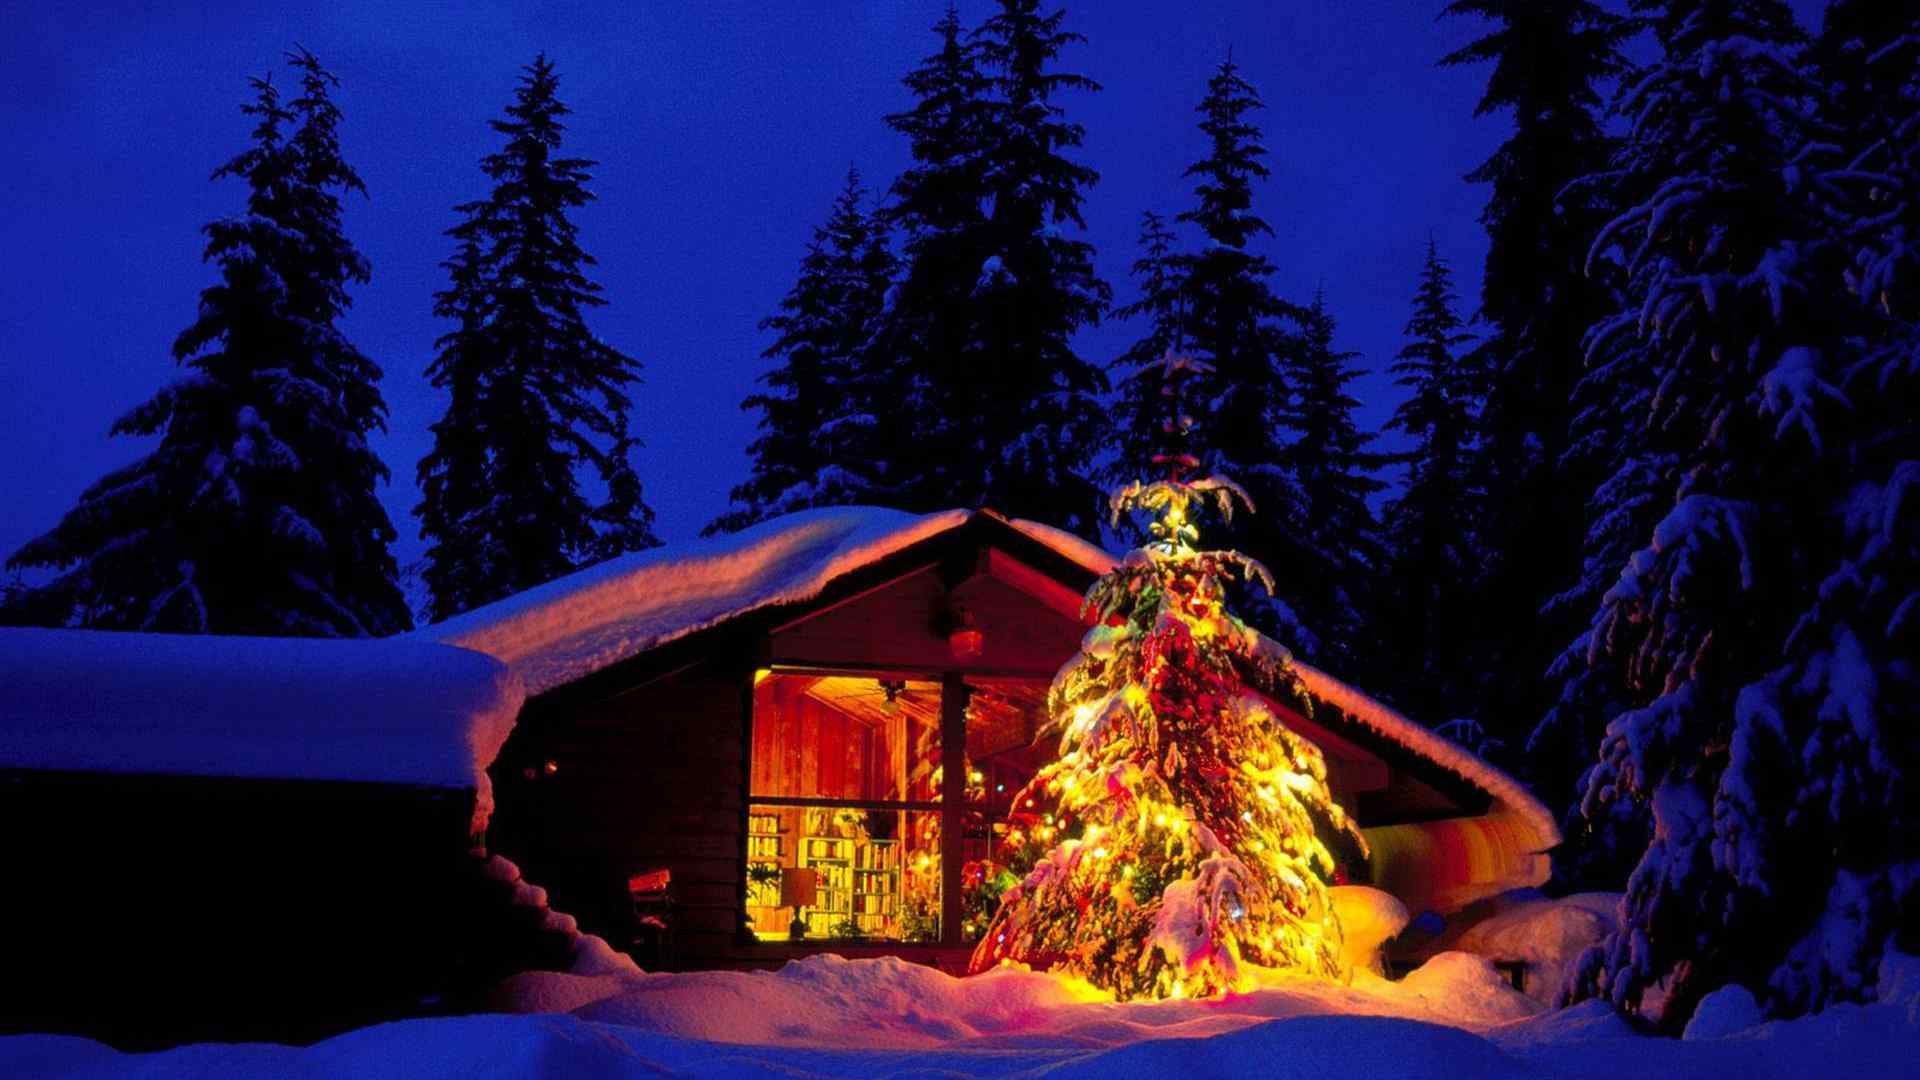 唯美的圣诞树风景图片桌面壁纸